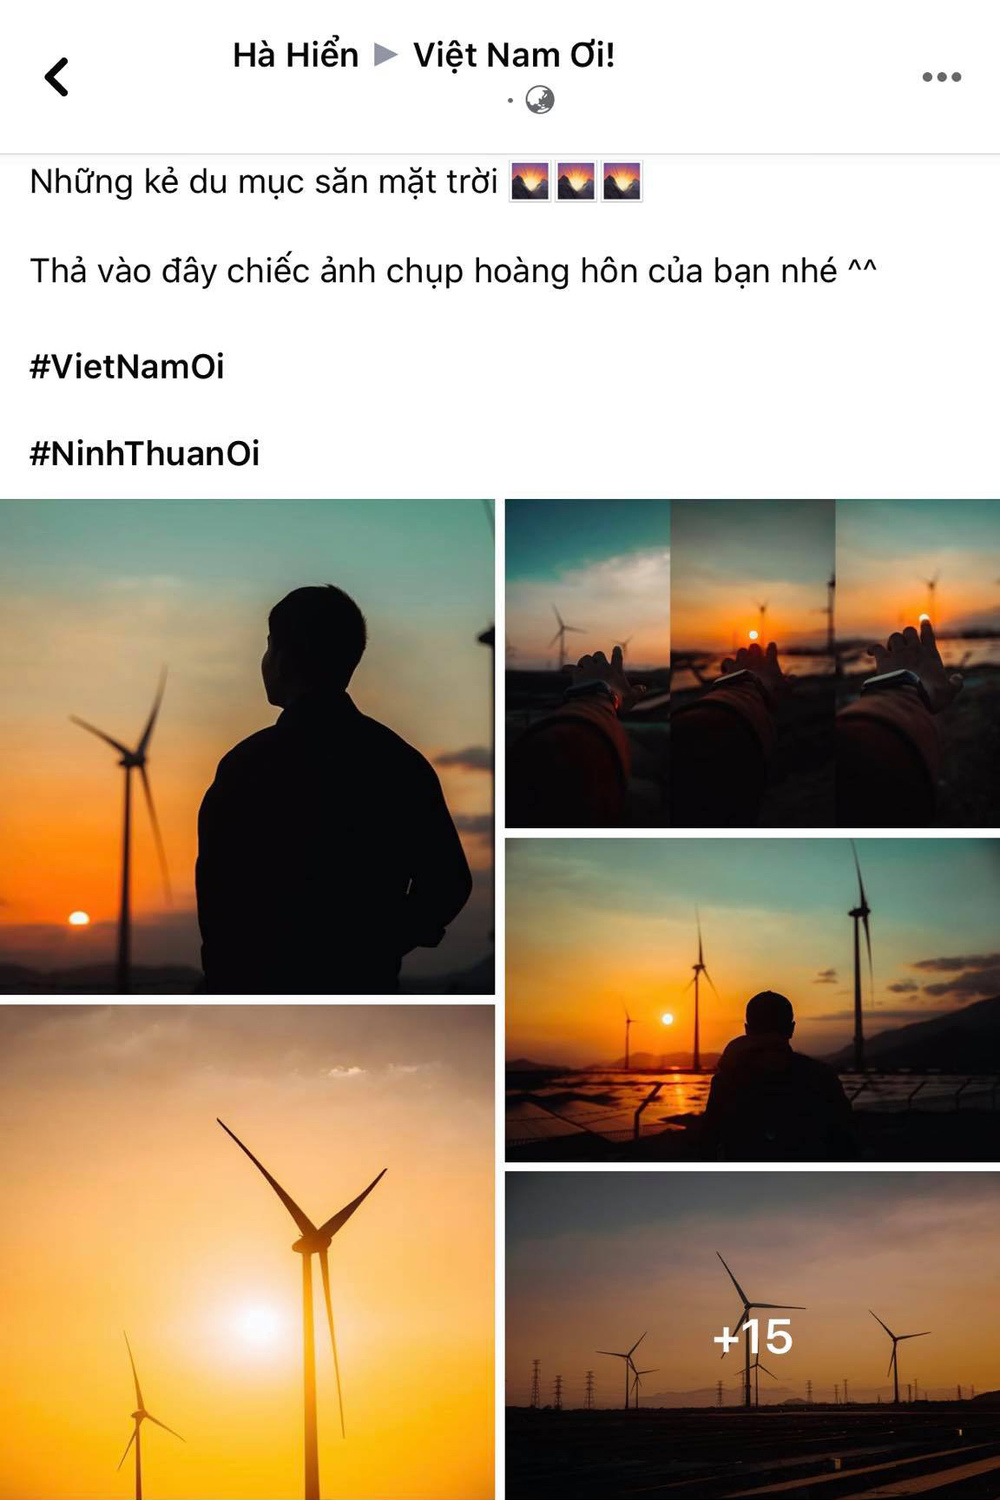  
Thành viên Việt Nam Ơi giới thiệu bộ ảnh về cánh đồng điện (quạt) gió Ninh Thuận.